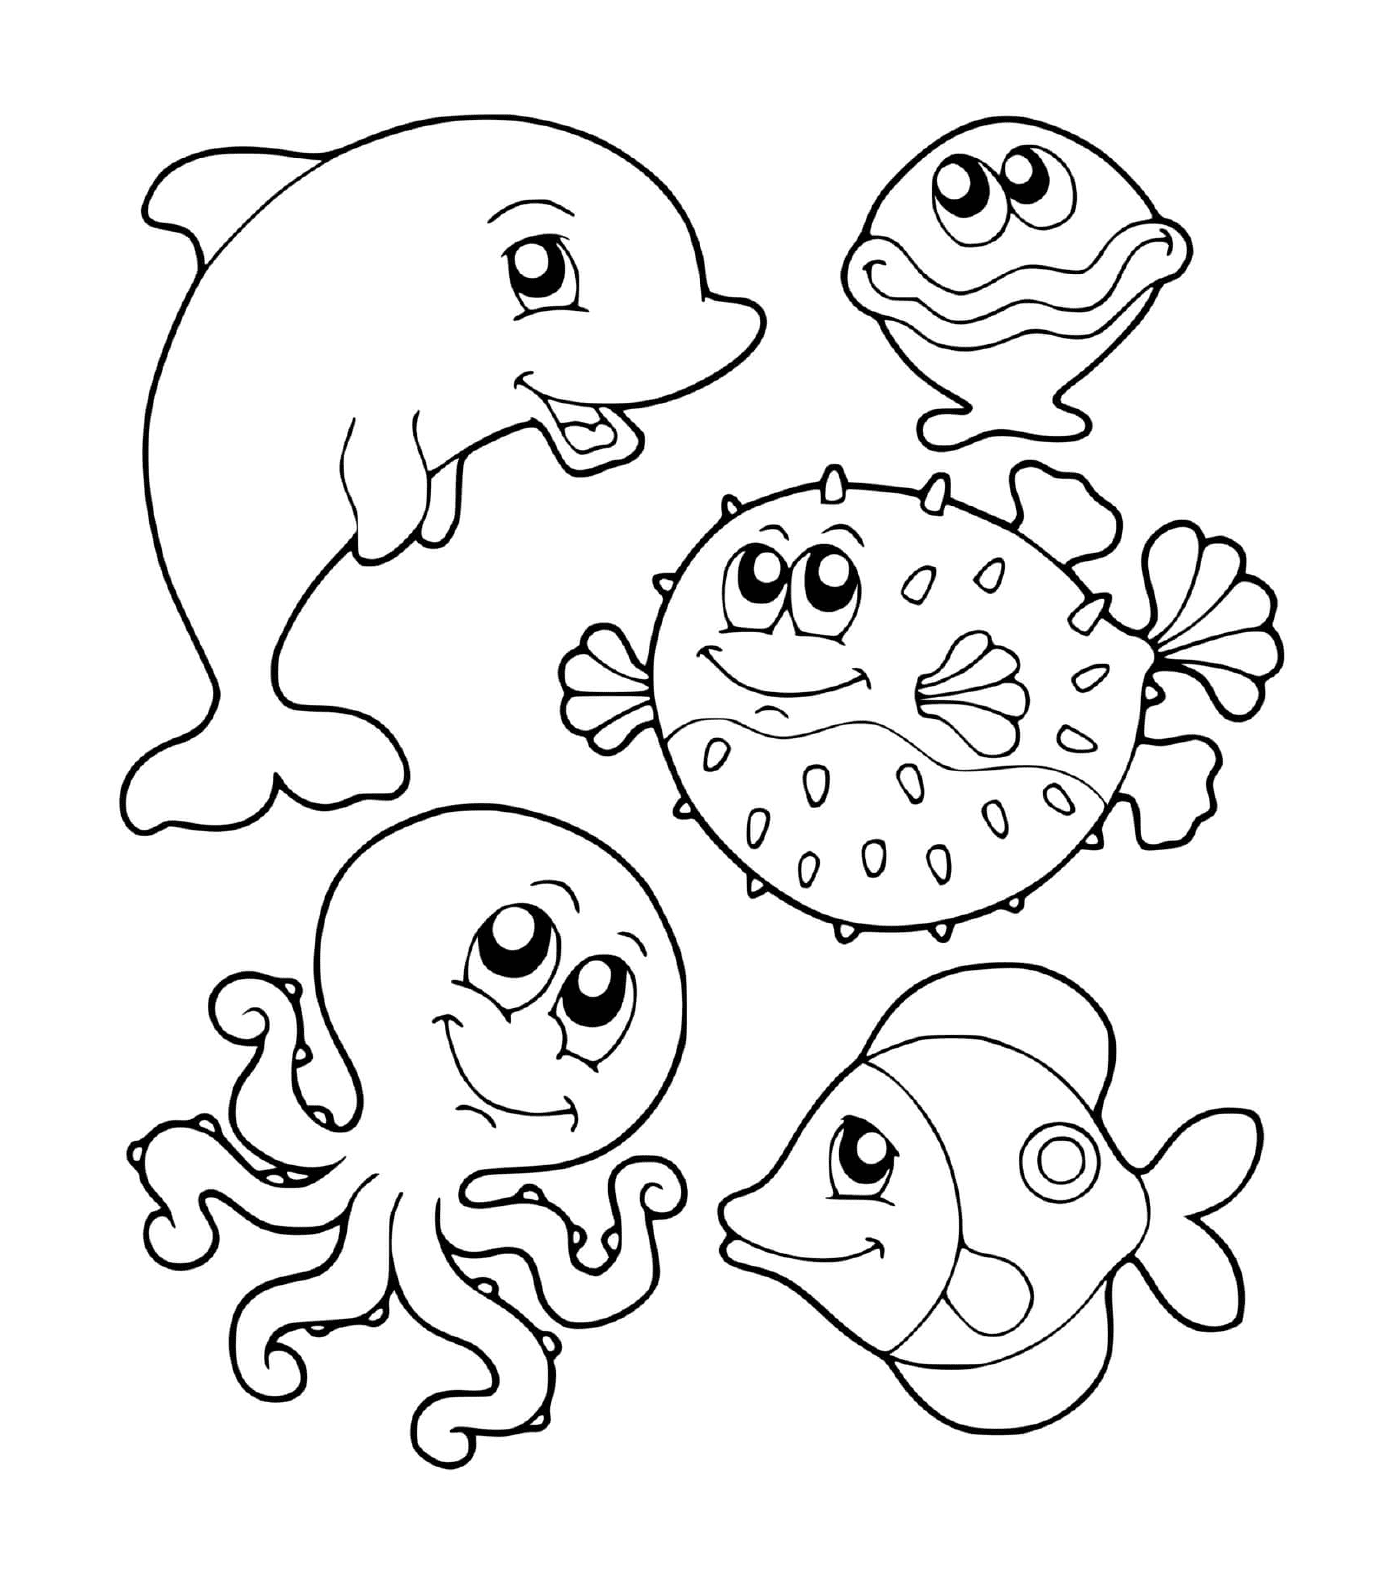   Groupe d'animaux marins dans l'eau 